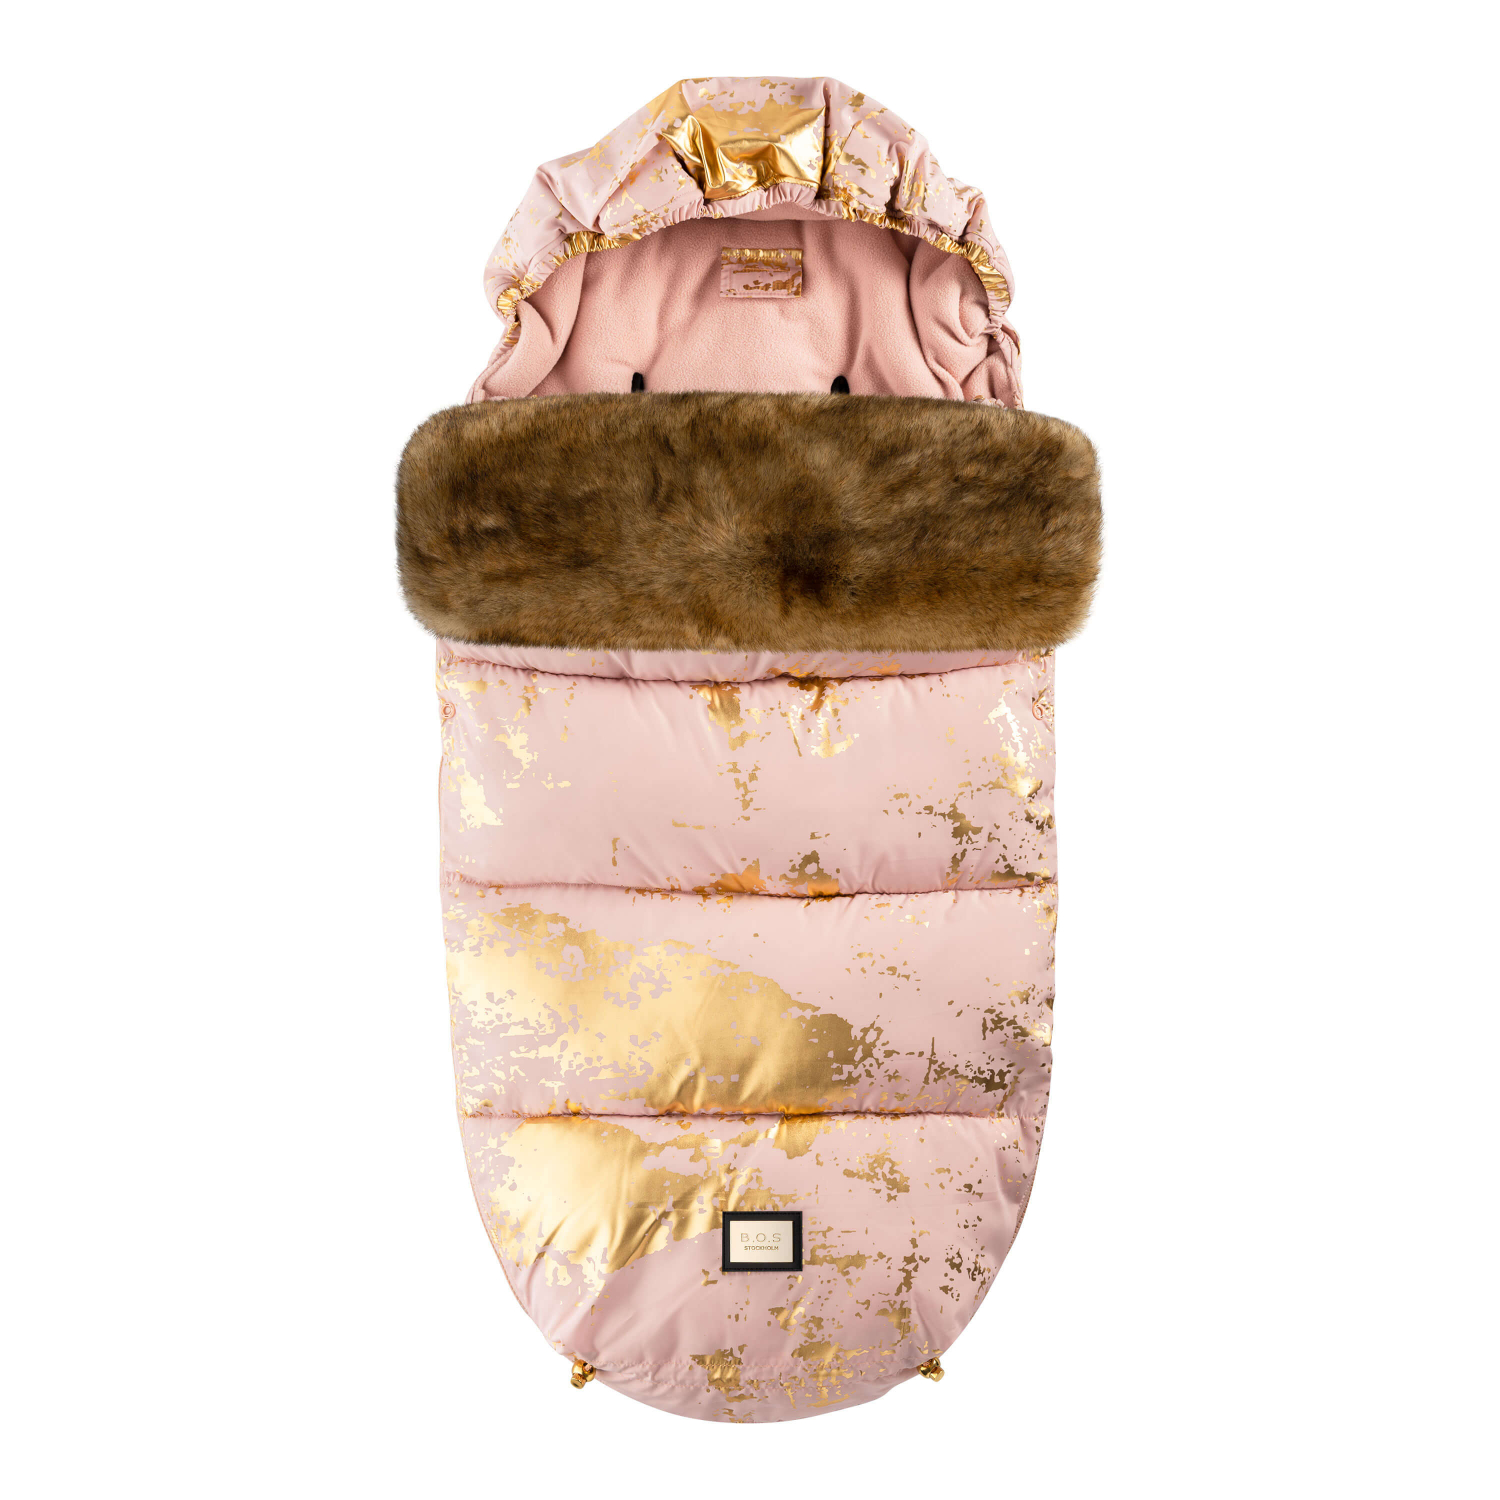 Luxus-Fußsack pink mit goldenen Details